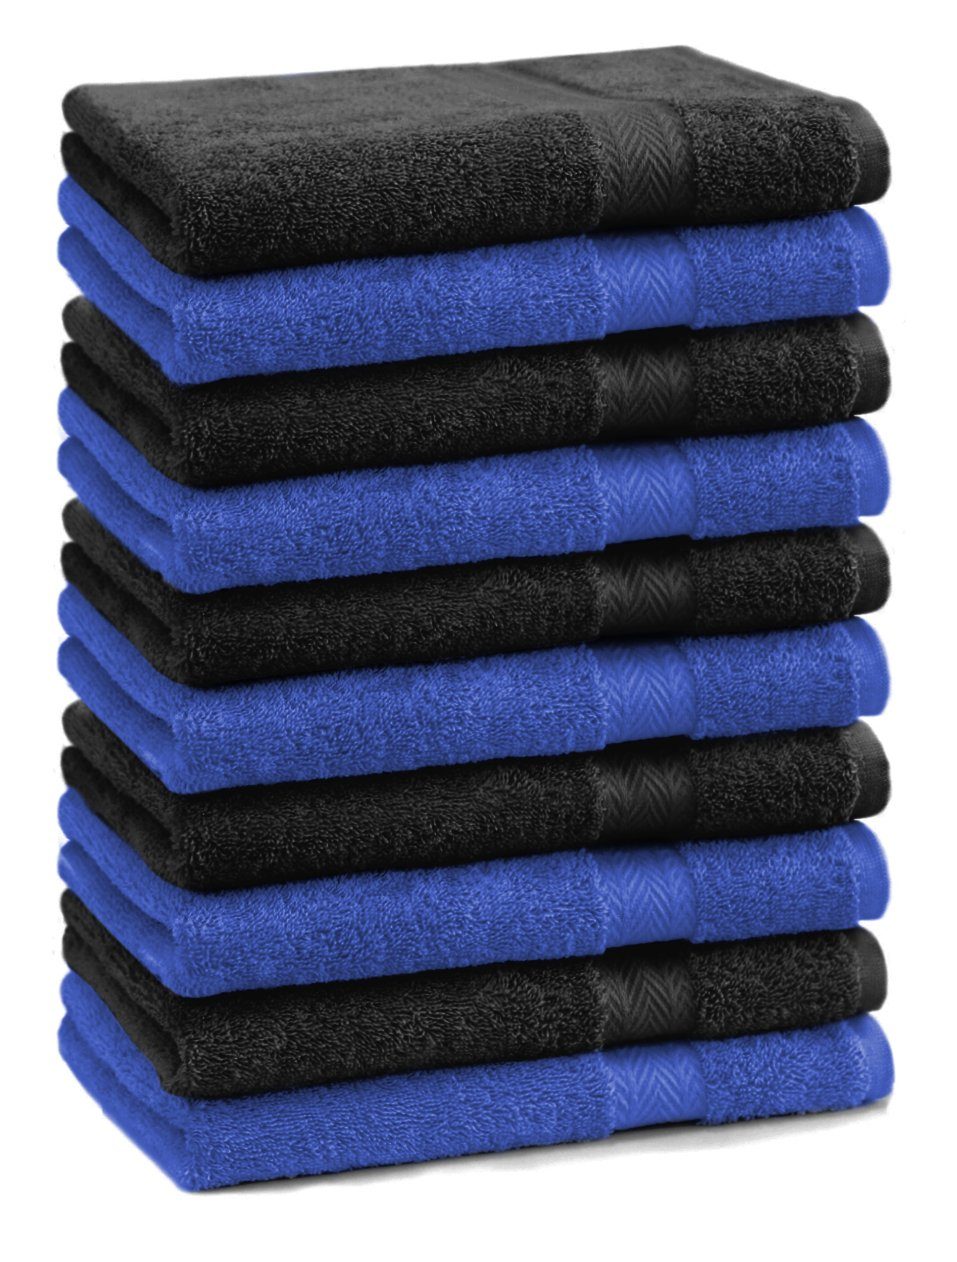 Betz Seiftuch 10 Stück Seiftücher Premium 100% Baumwolle 30x30 cm royalblau/schwarz